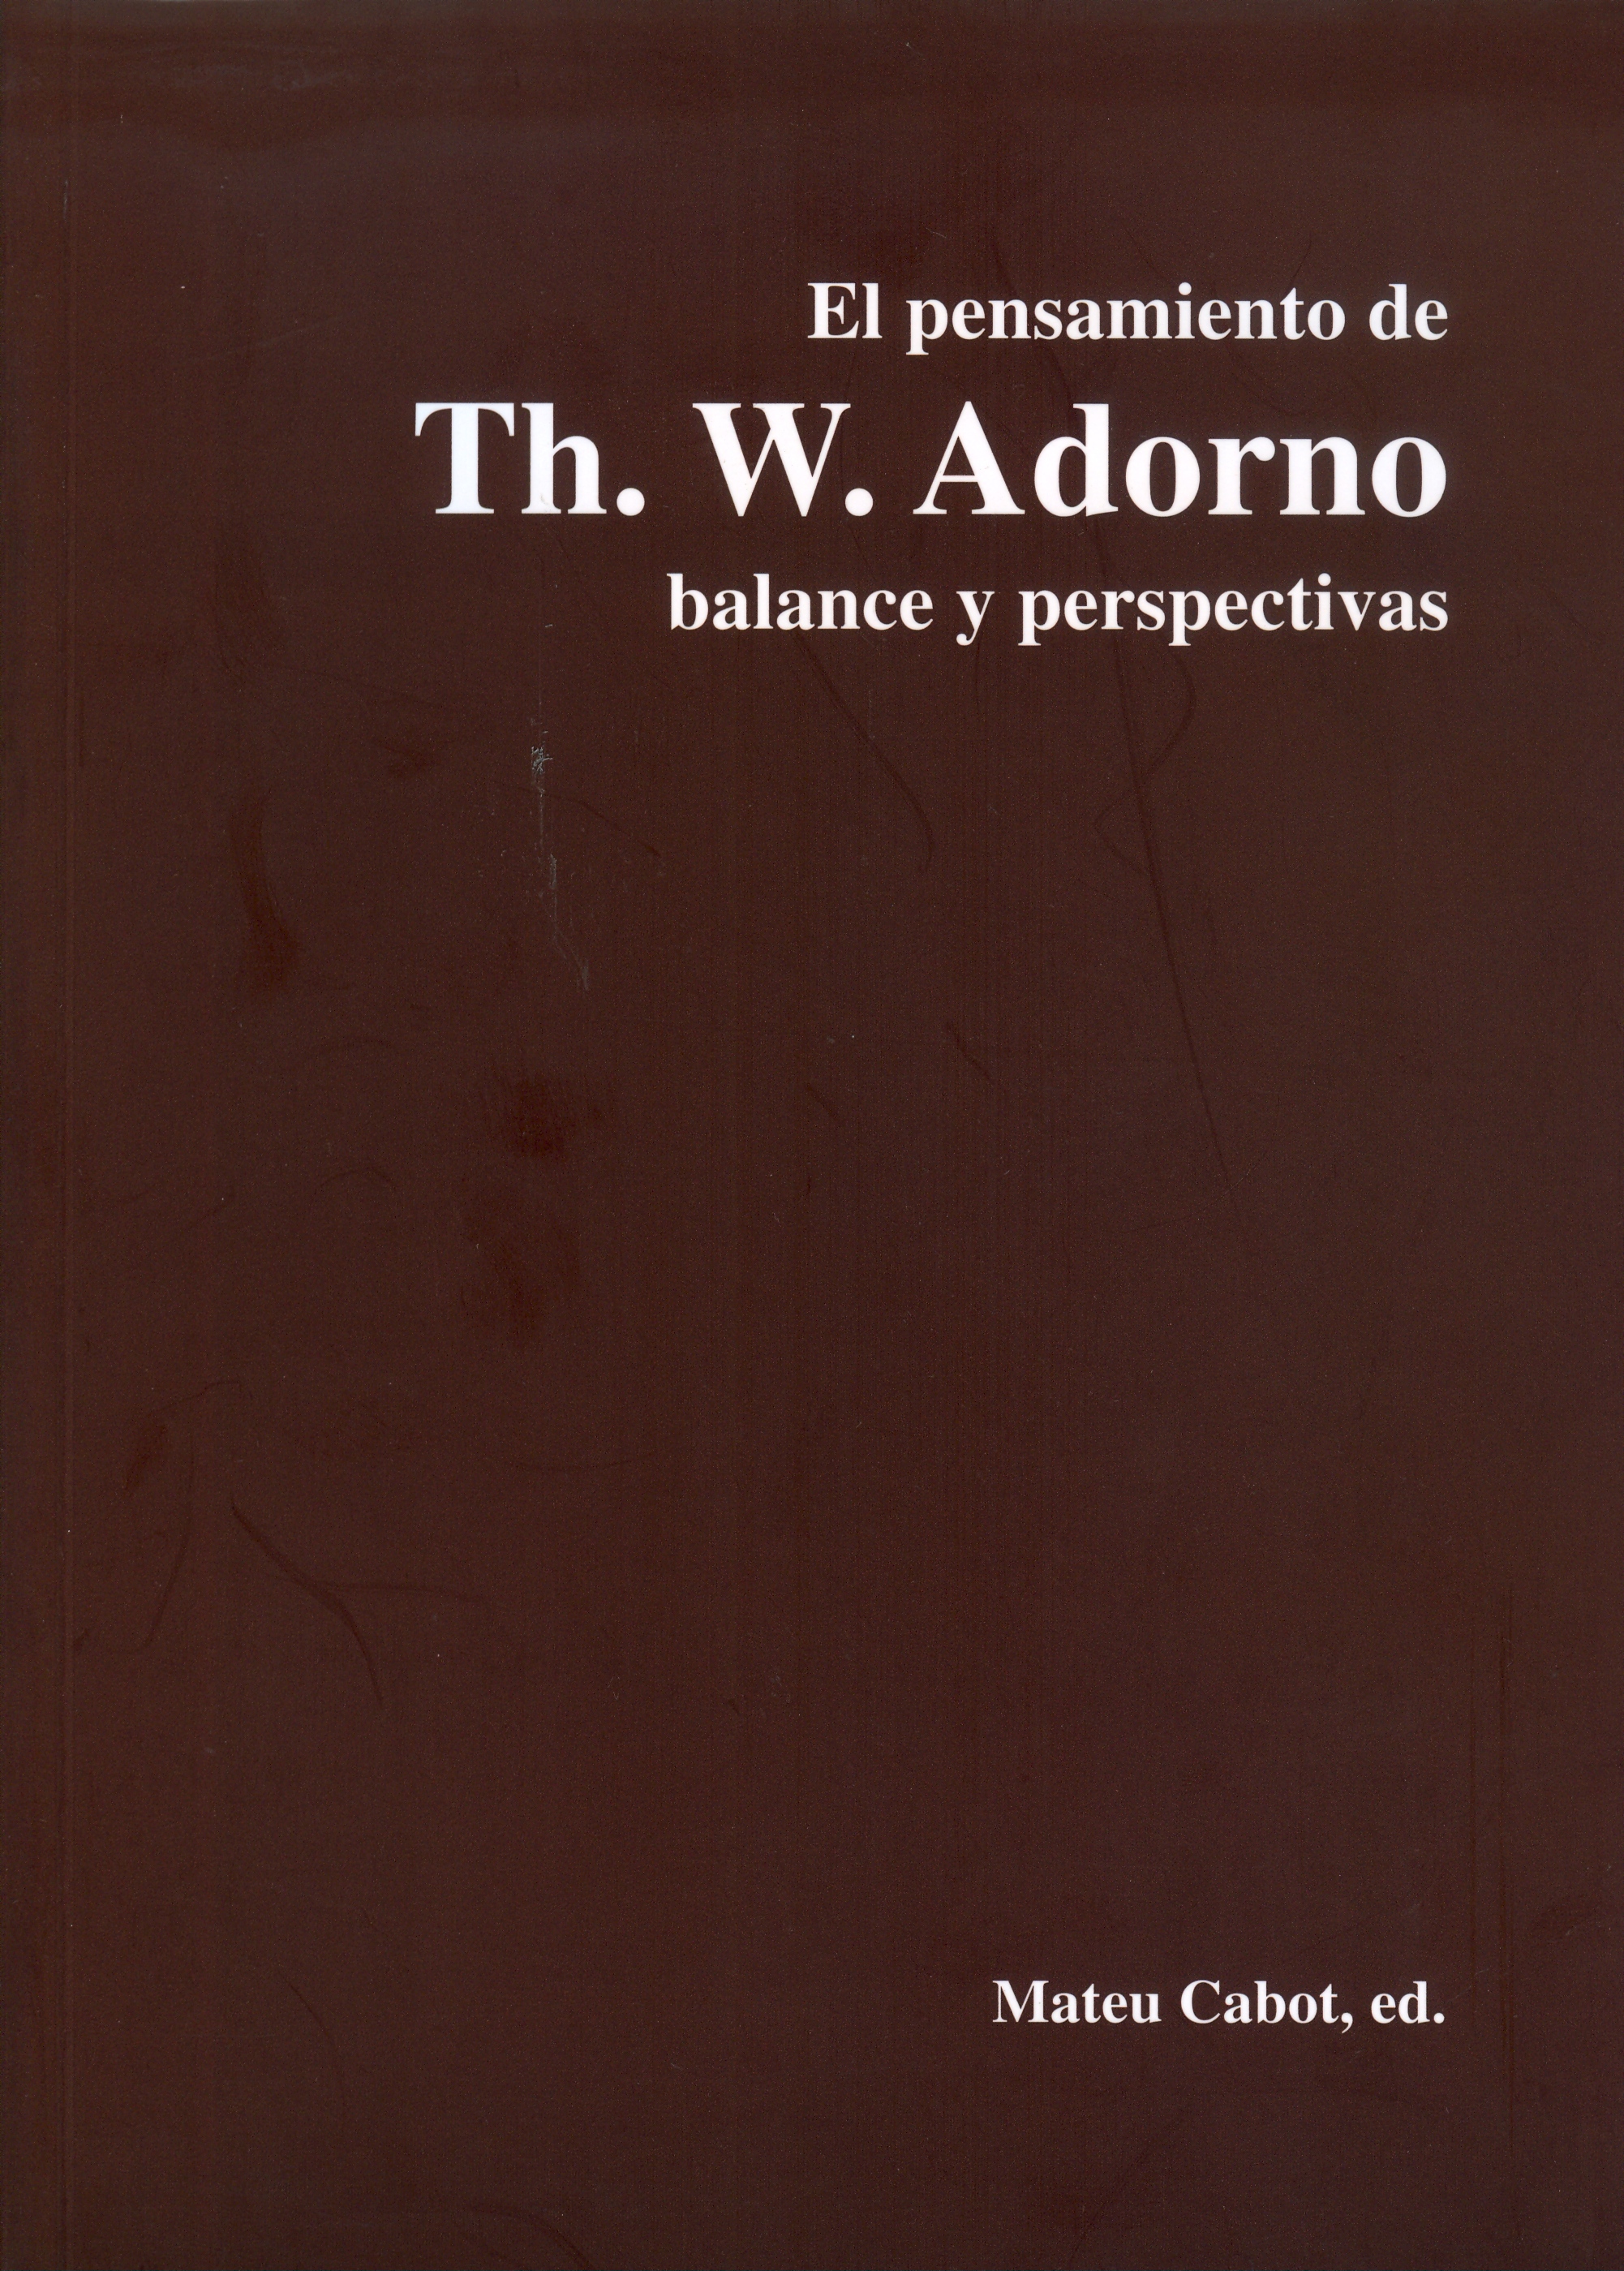 El pensamiento de Th. W. Adorno